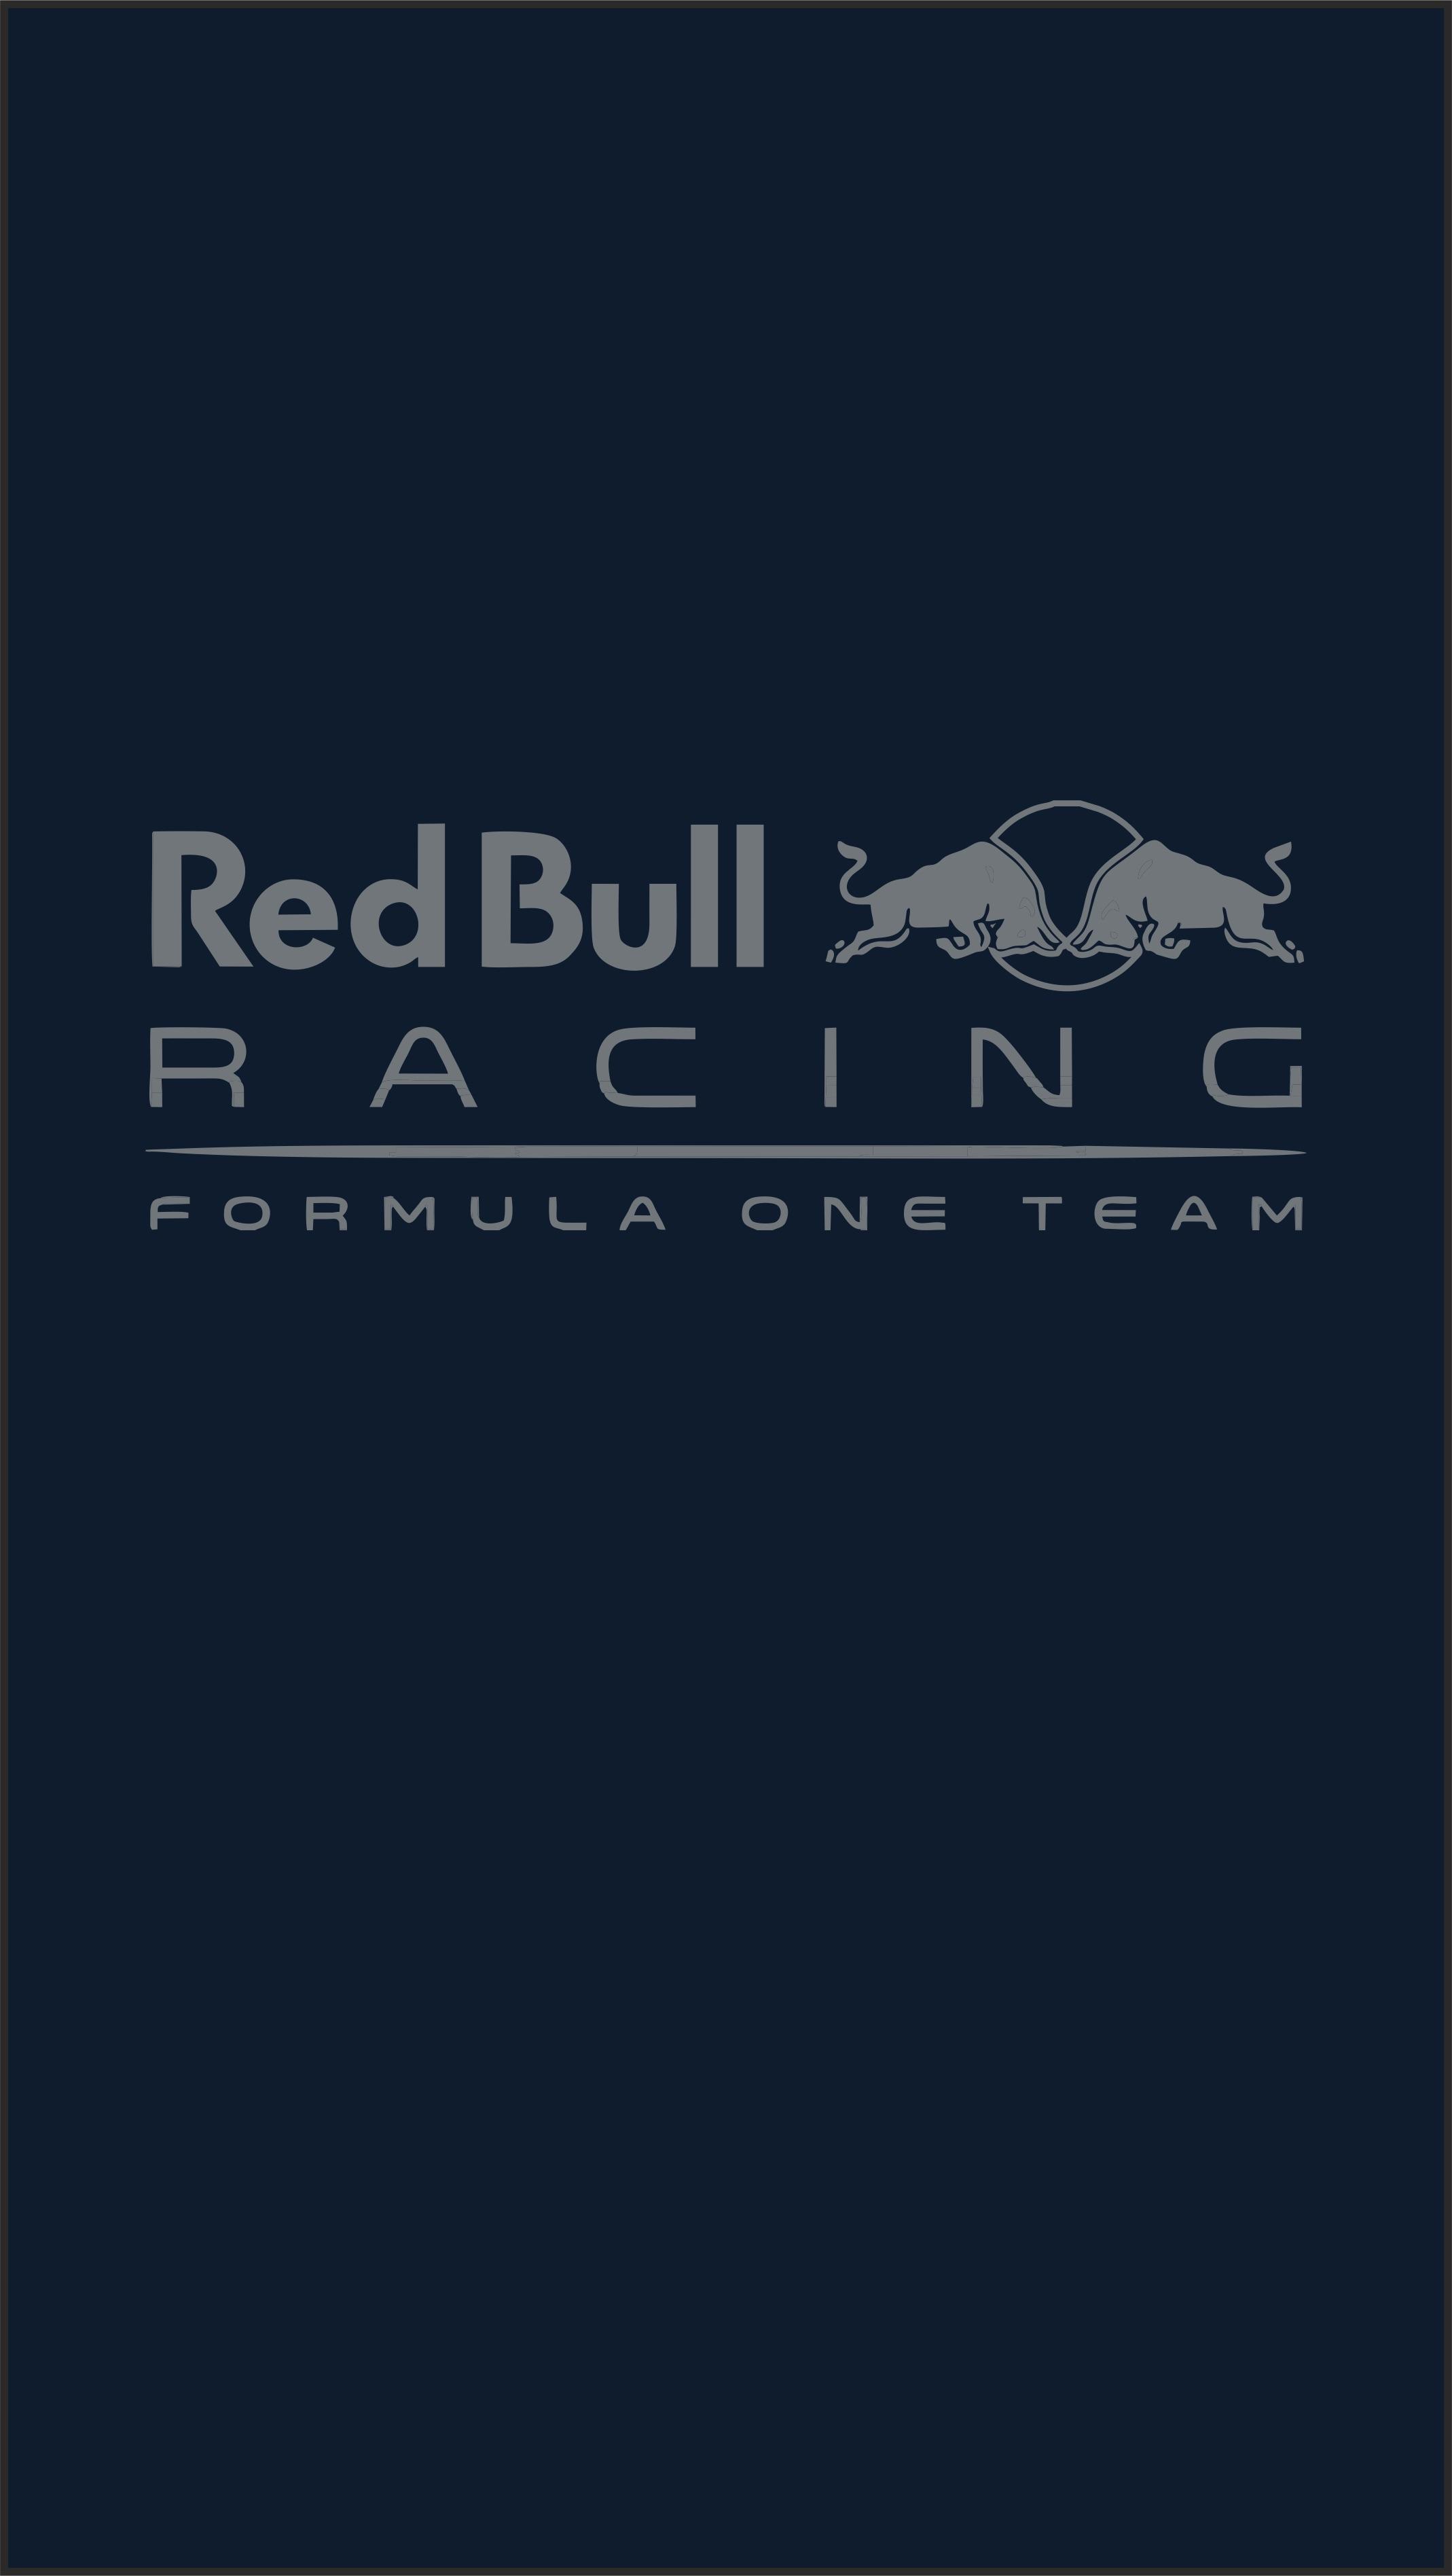 Wallpaper) Red Bull Racing F1 Wallpaper (iPhone)